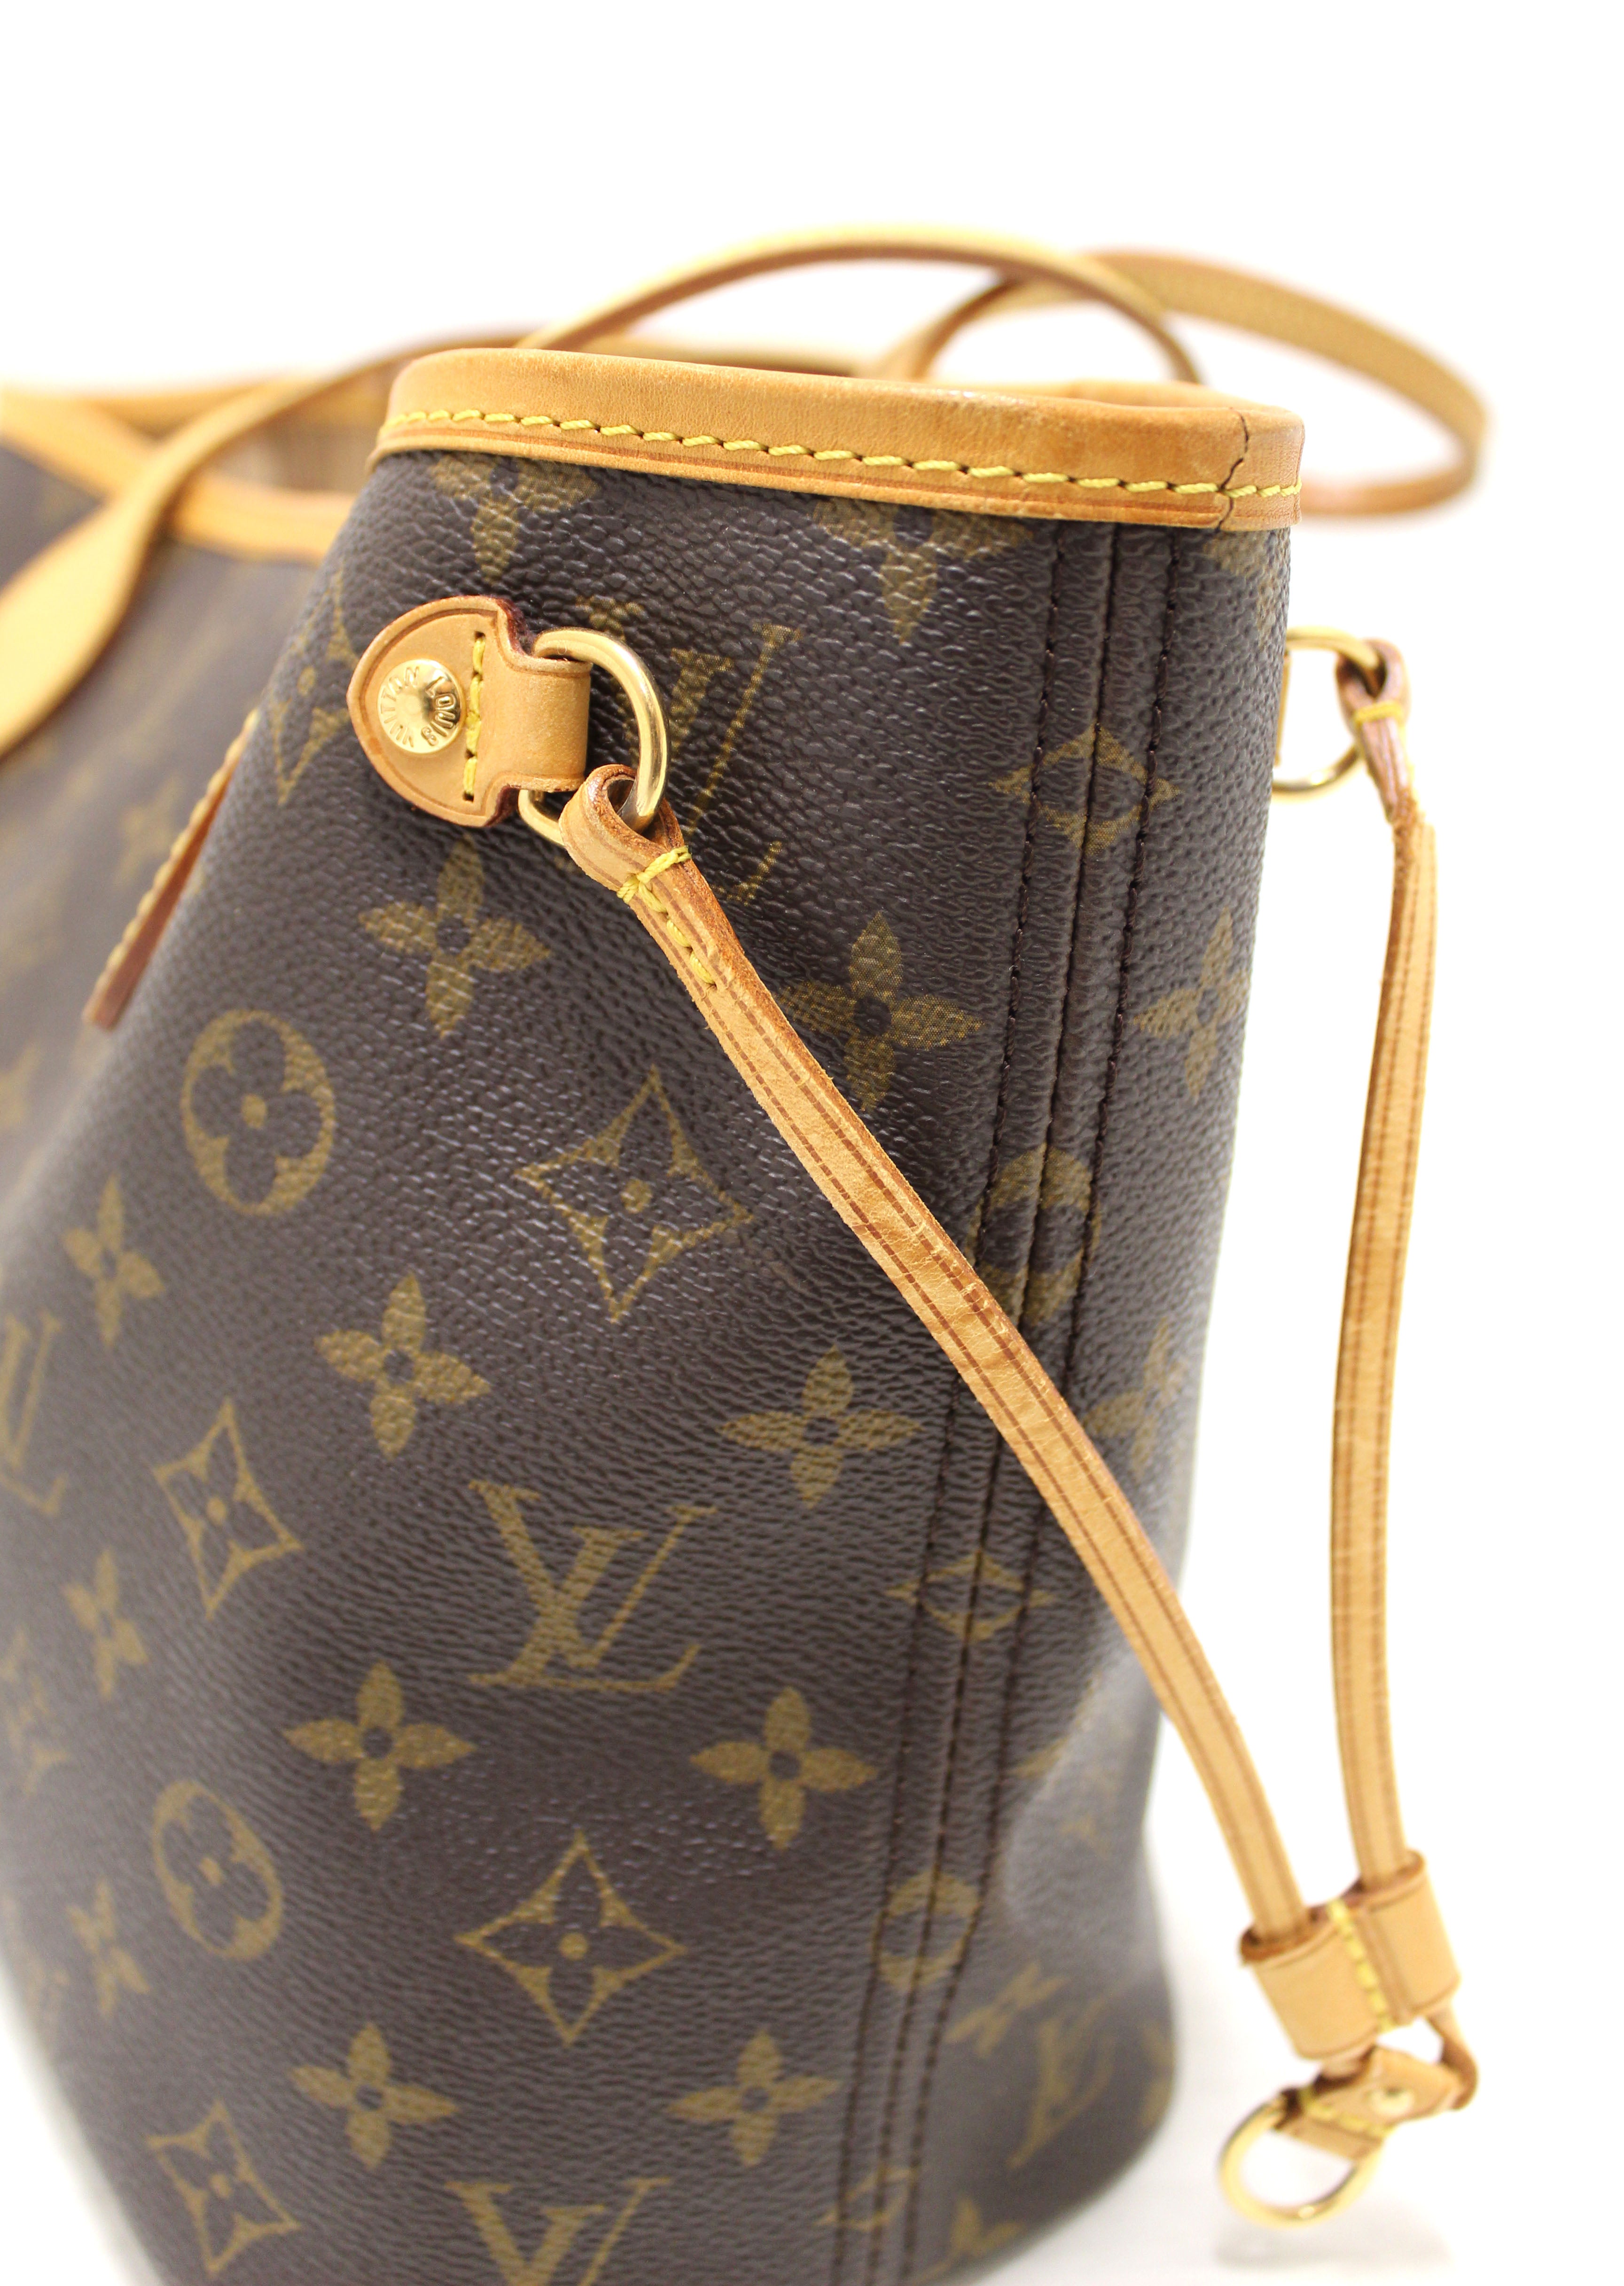 Classic Authentic Louis Vuitton Neverfull MM Monogram Shoulder Bag